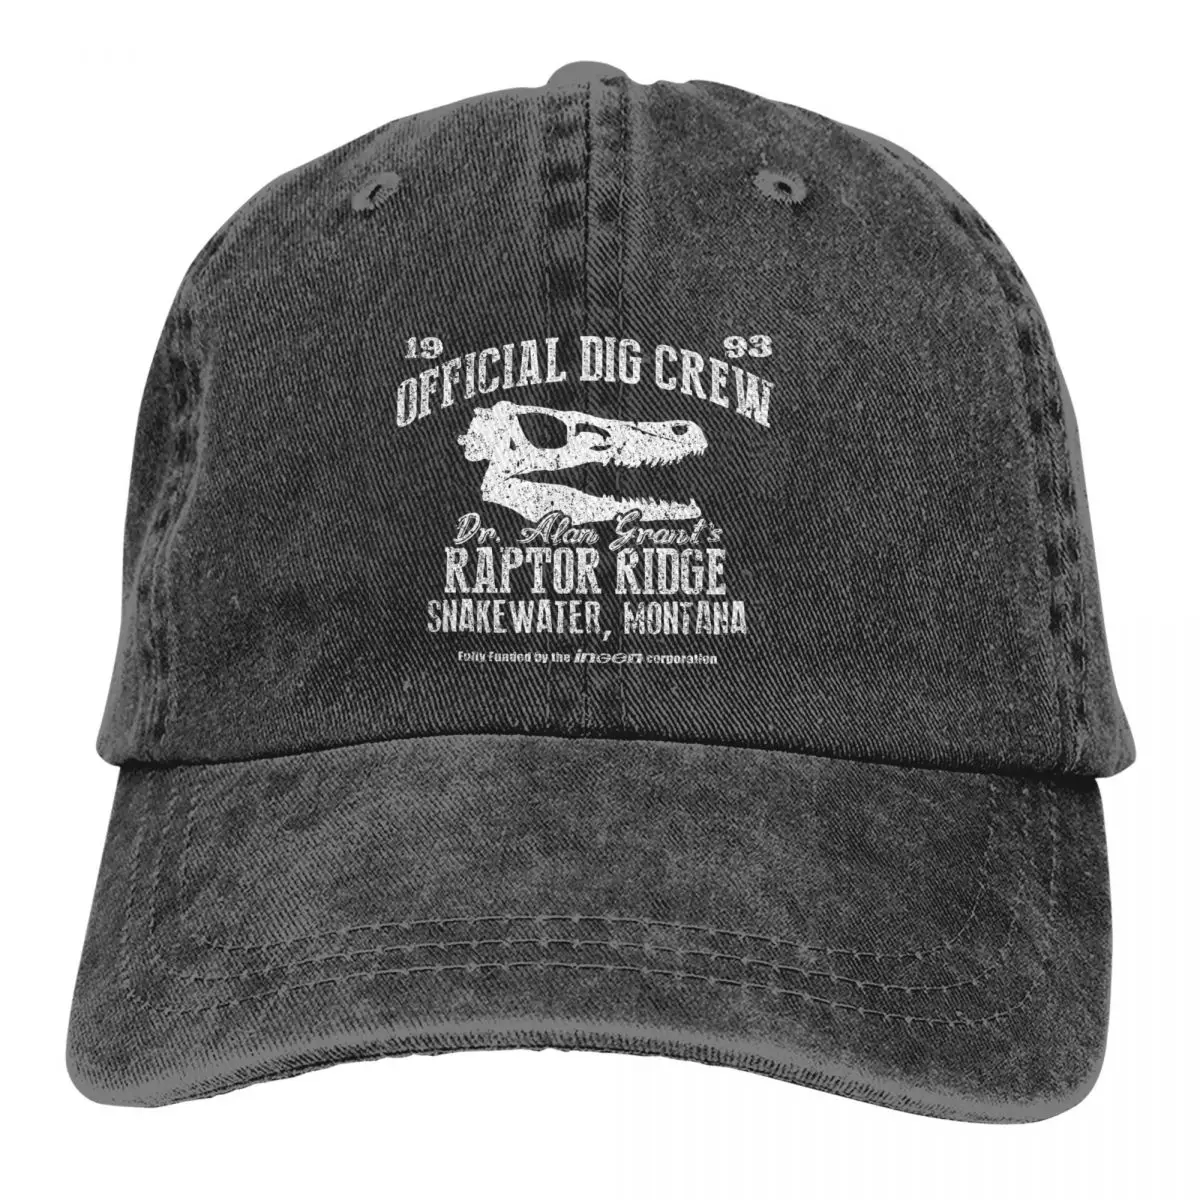 

Raptor Ridge Baseball Caps Peaked Cap Jurassic Park Dinosaur Dr Alan Grant Sun Shade Hats for Men Women